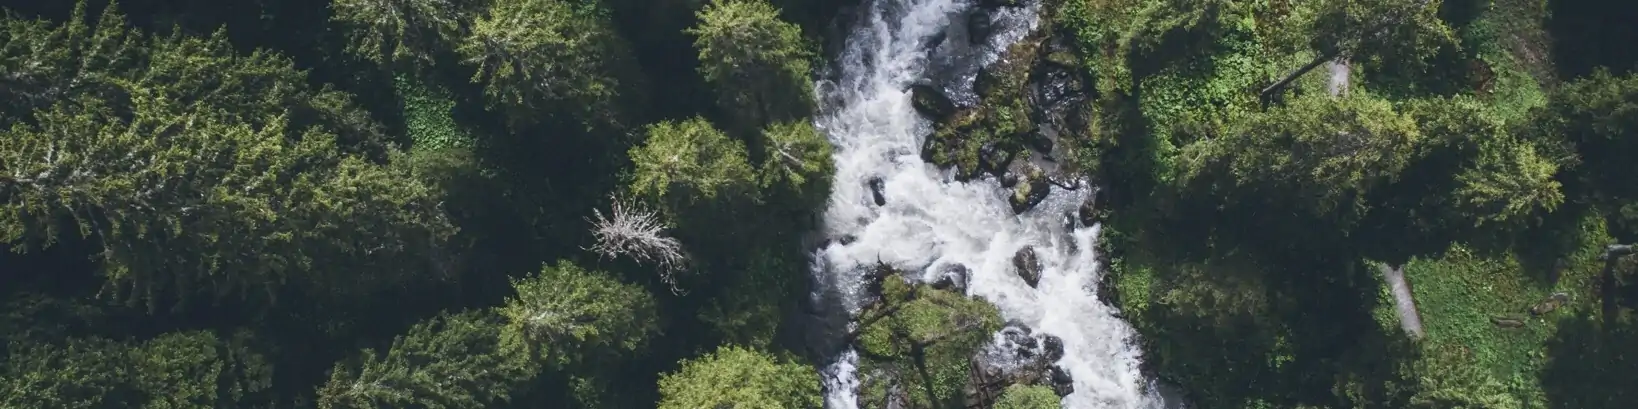 Waterfall In Forest, Lenk, Switzerland.